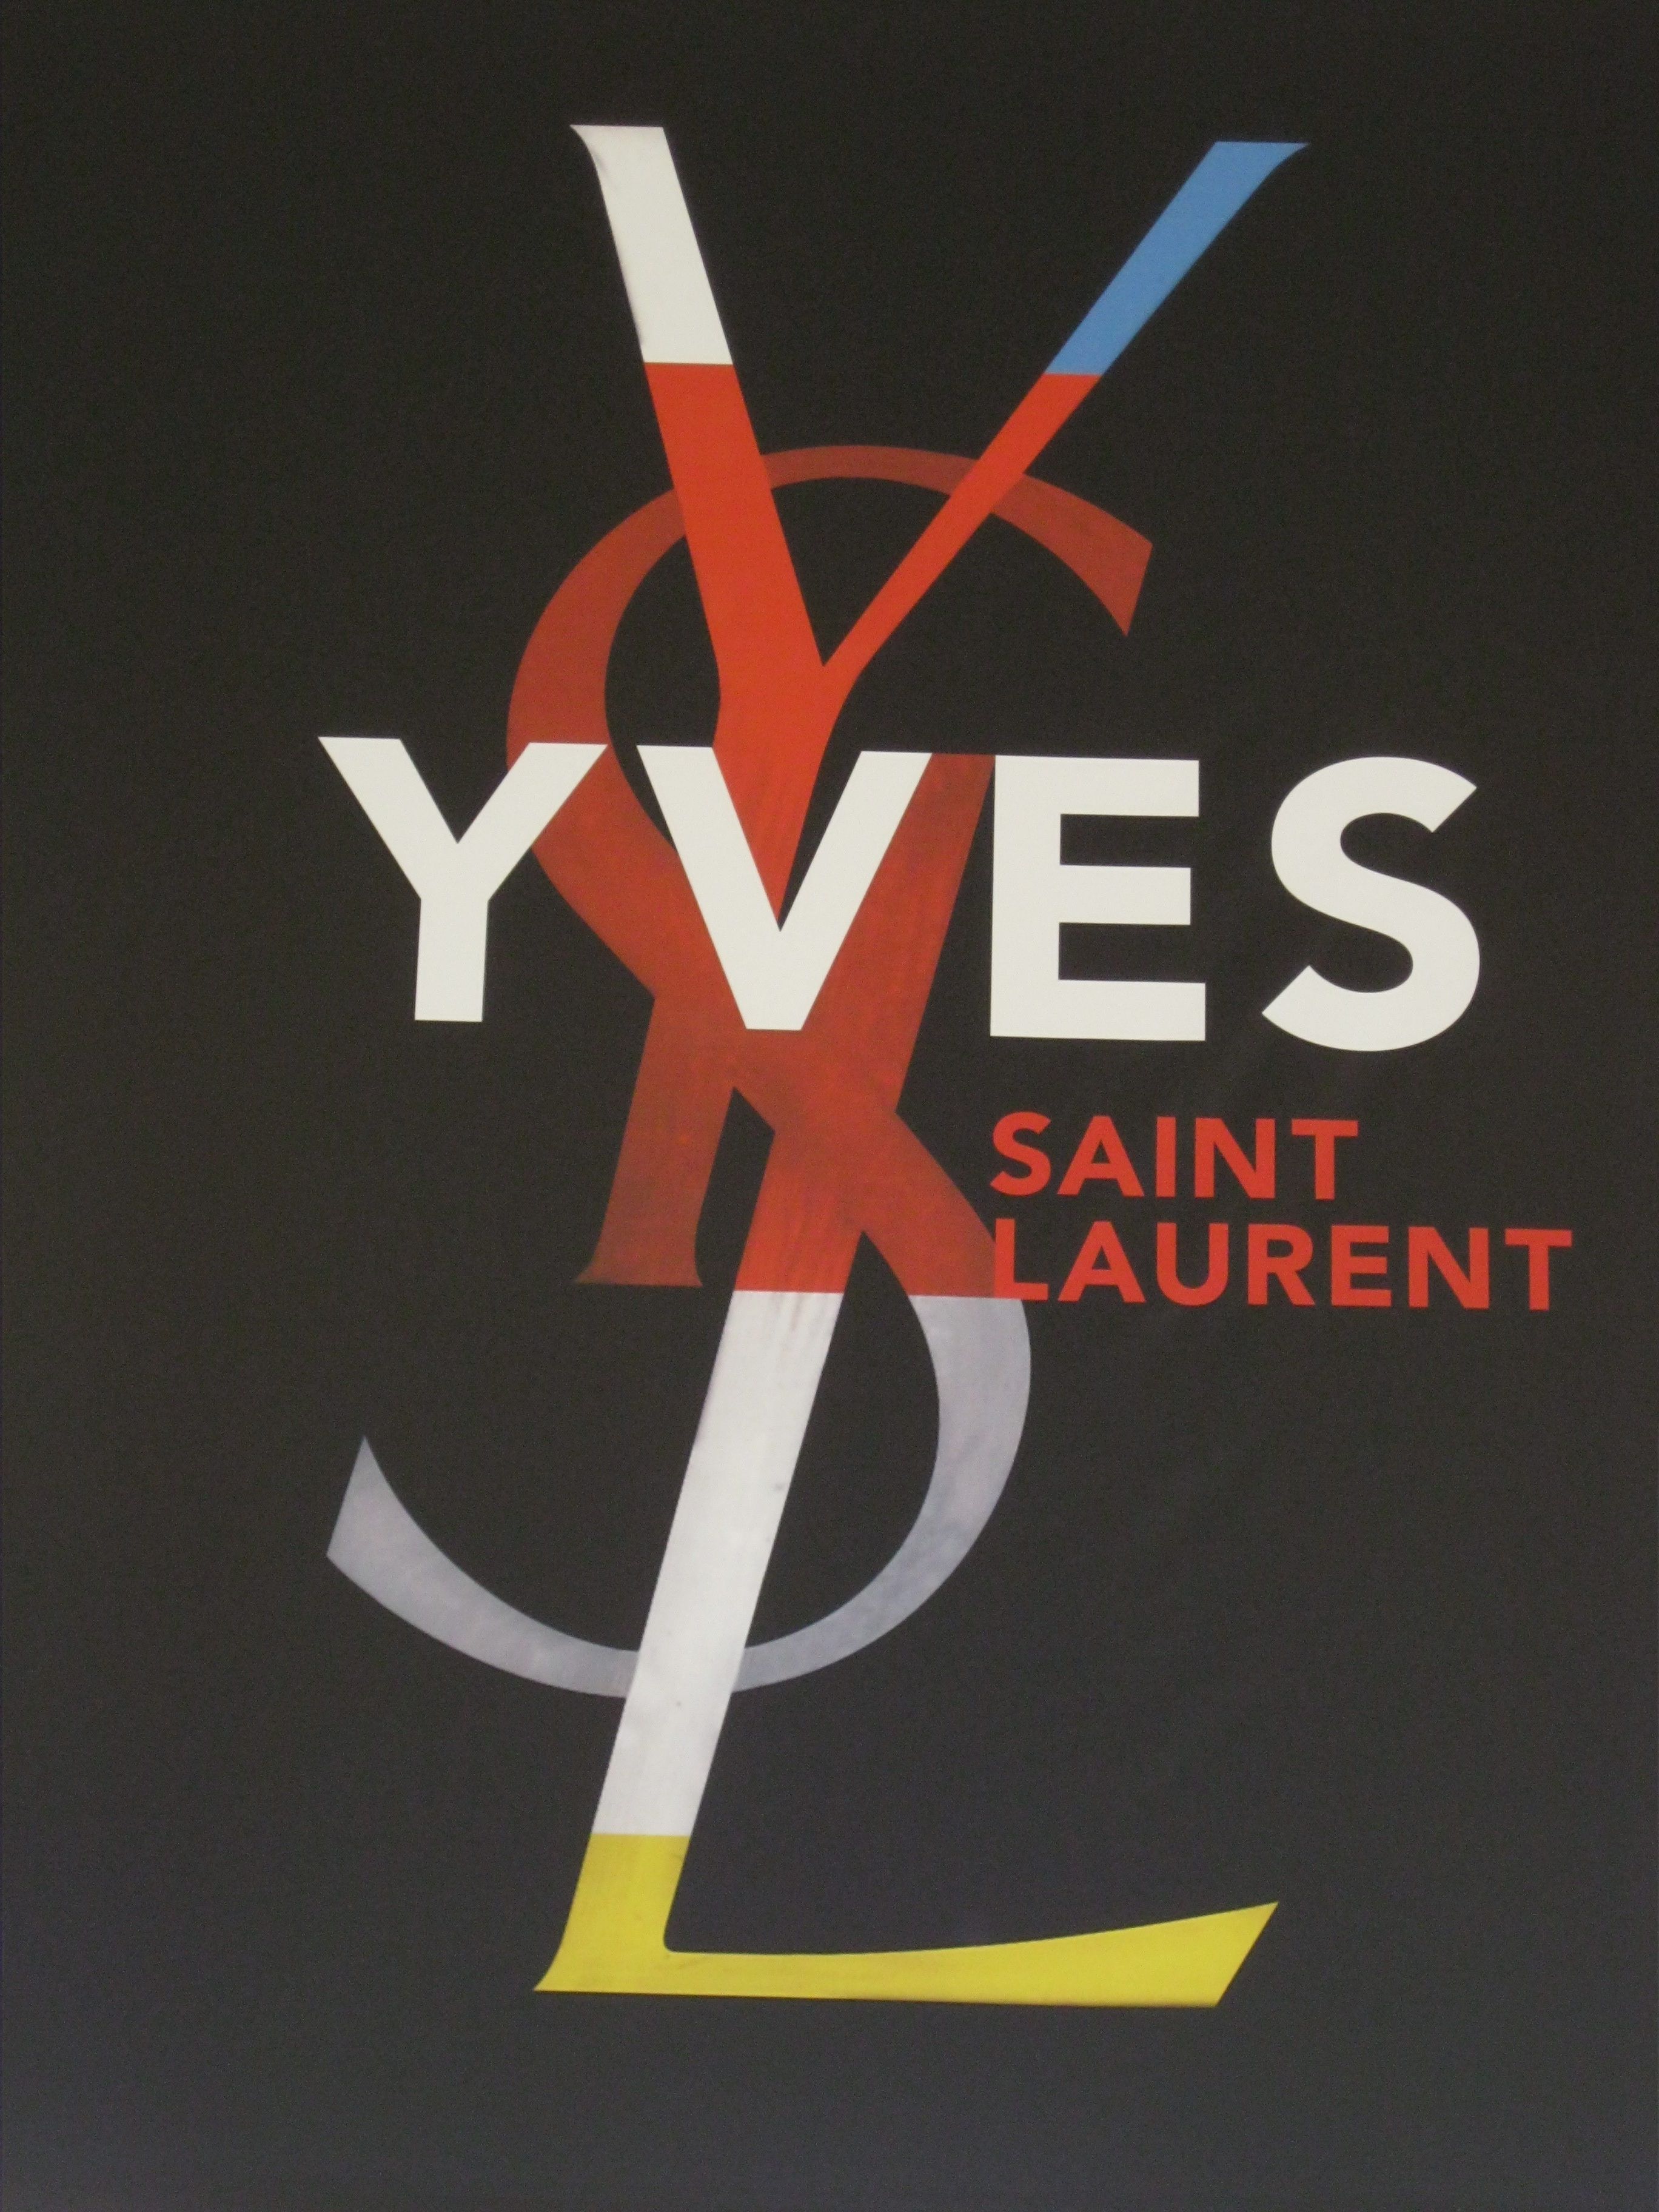 Vintage Yves Saint Laurent. Brand Marks. Yves saint